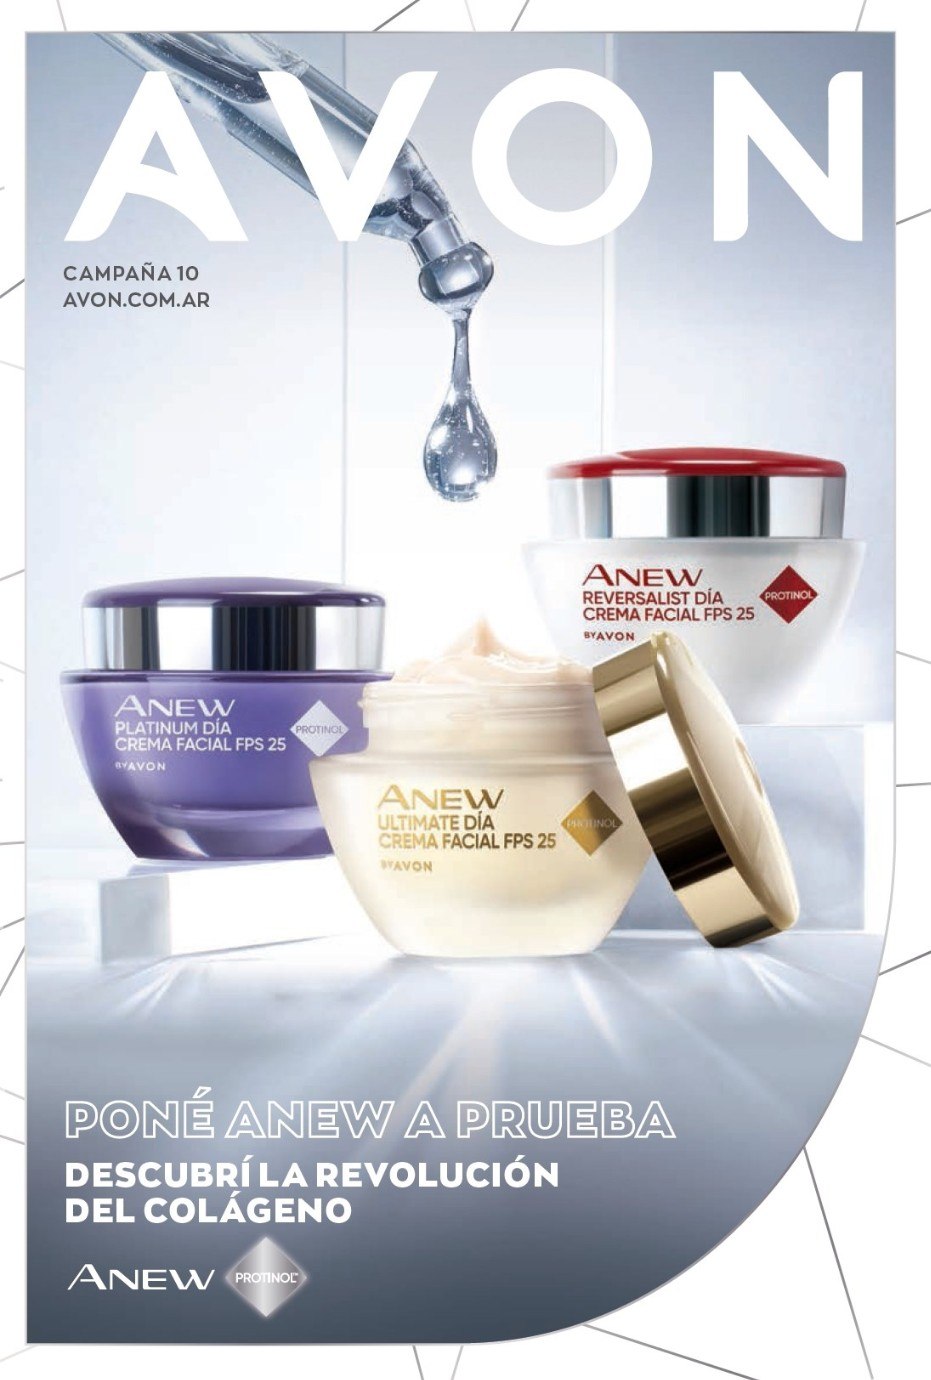 Catálogo Avon Campaña 10 2021 Argentina